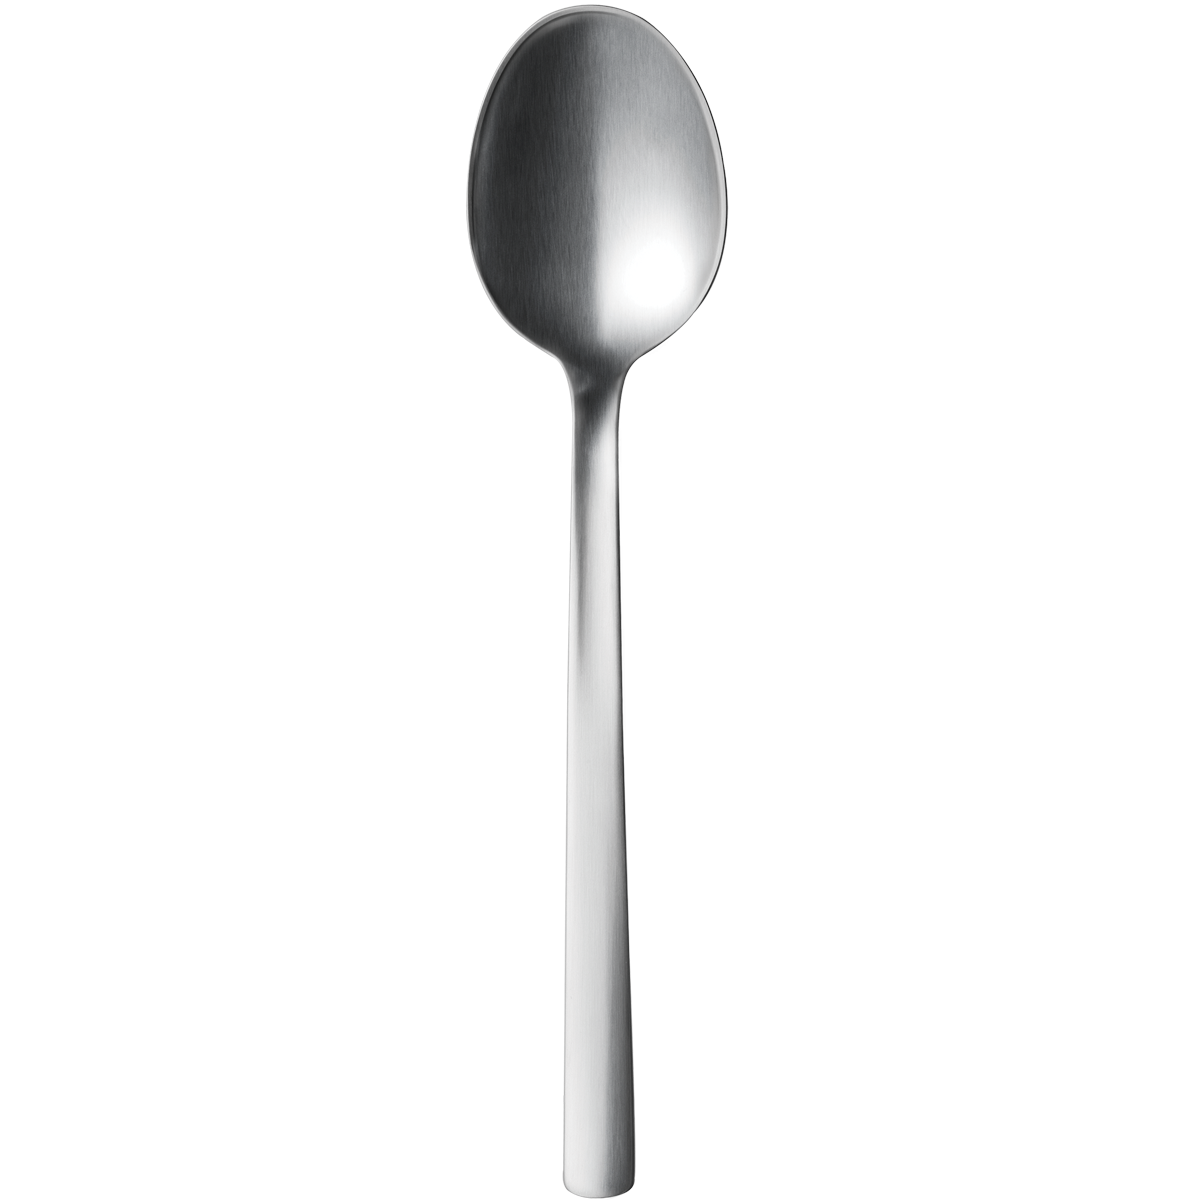 Steel Spoon Image PNG Image